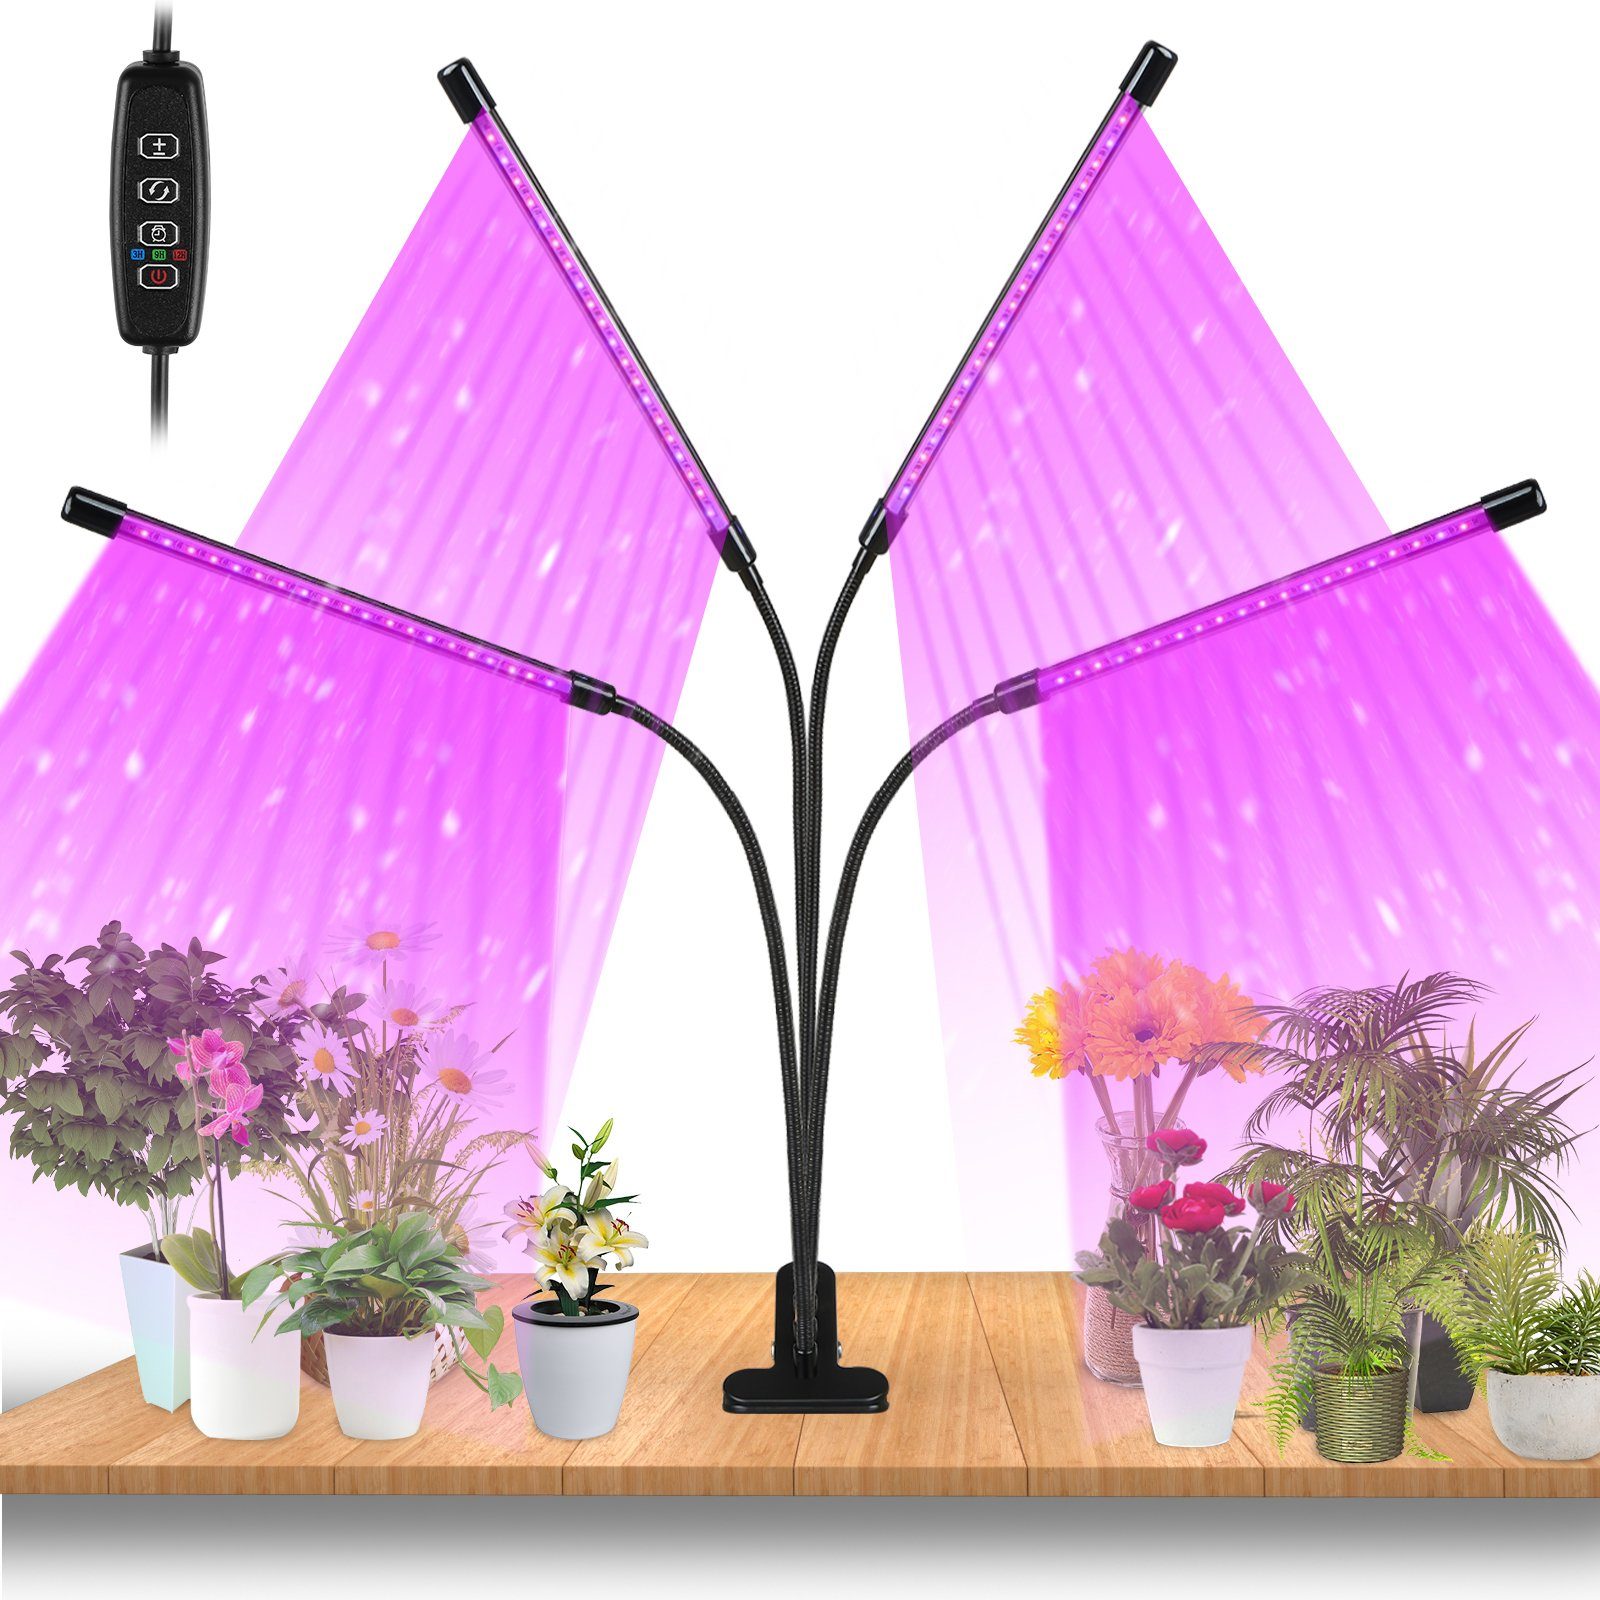 Clanmacy Pflanzenlampe 30W/40W LED Pflanzenlicht mit 3 Licht Modus, 10 Helligkeitsstufen, Wachstumslampe Vollspektrum, 360°Einstellbar Grow Lampe mit Zeitschaltuhr für Gartenarbeit Bonsais